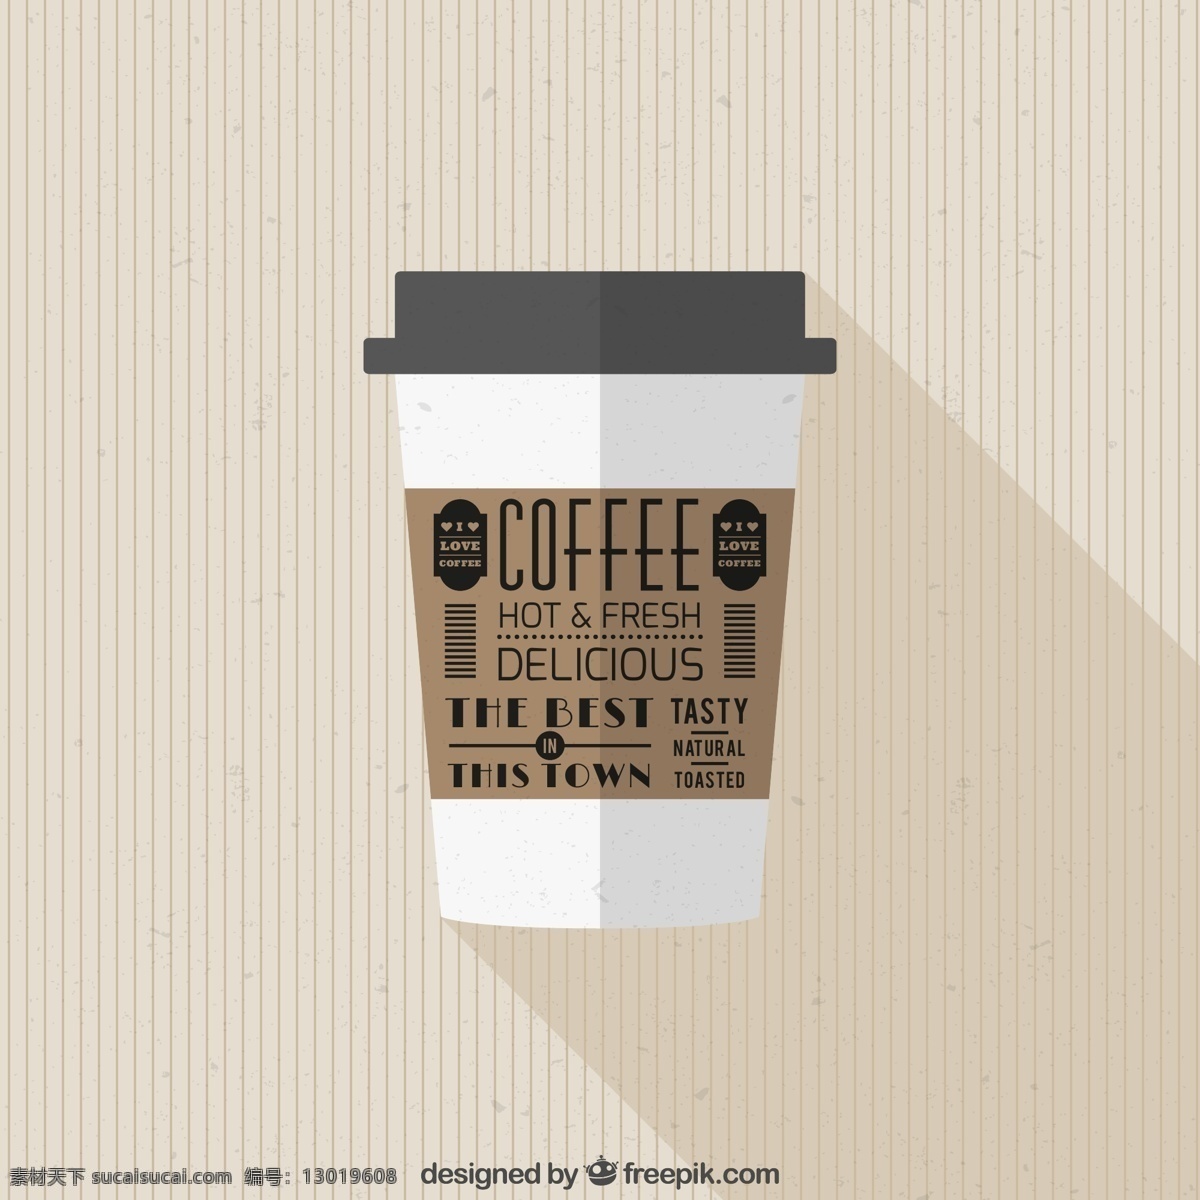 扁平化 外卖咖啡 咖啡杯 杯子包装设计 咖啡杯设计 矢量素材 生活百科 生活用品 平面素材 白色